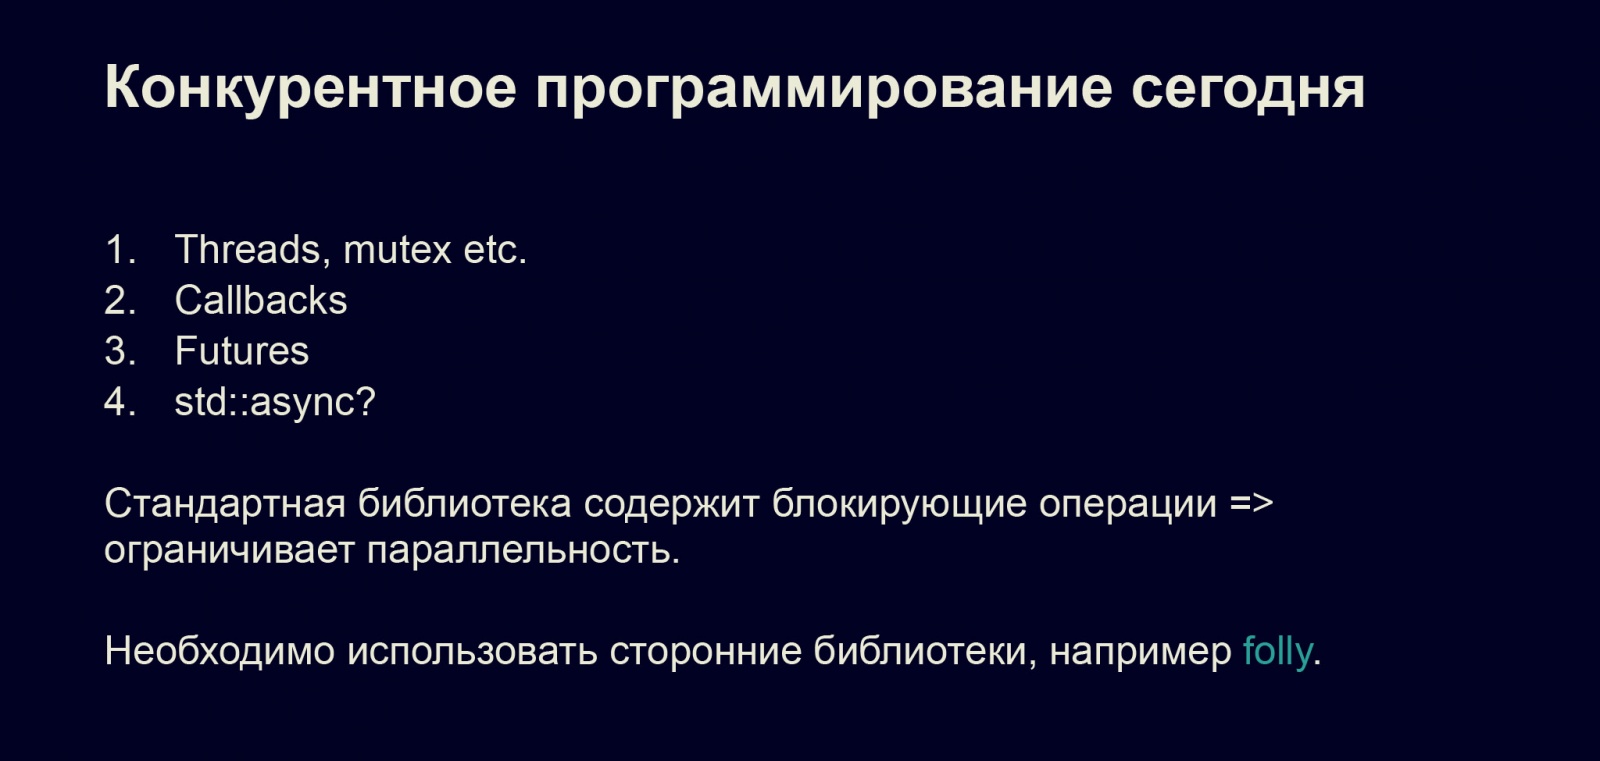 Асинхронность в С++20. Доклад в Яндексе - 1